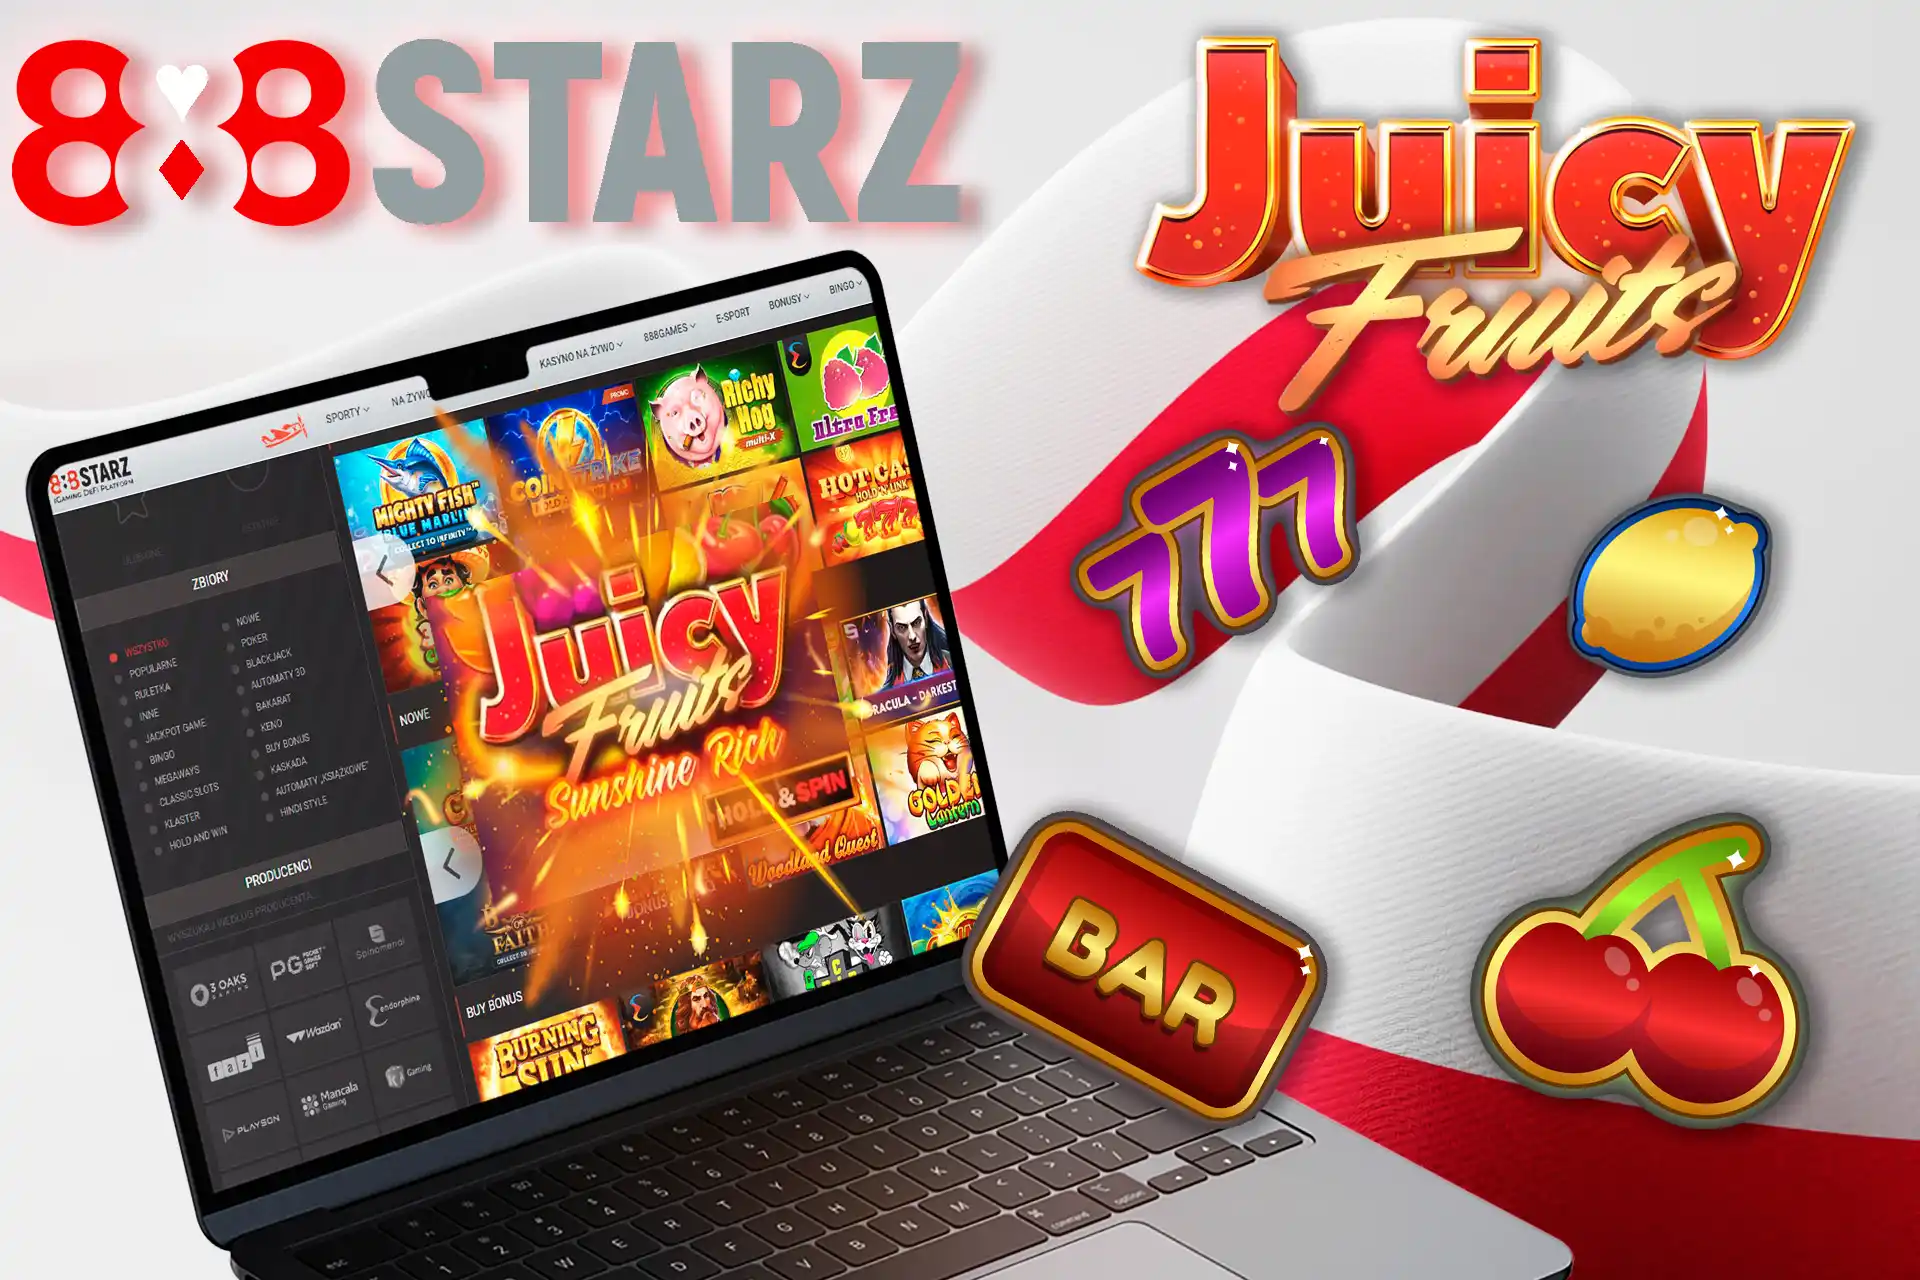 Zagraj w Juicy Fruits Sunshine Rich na 888starz